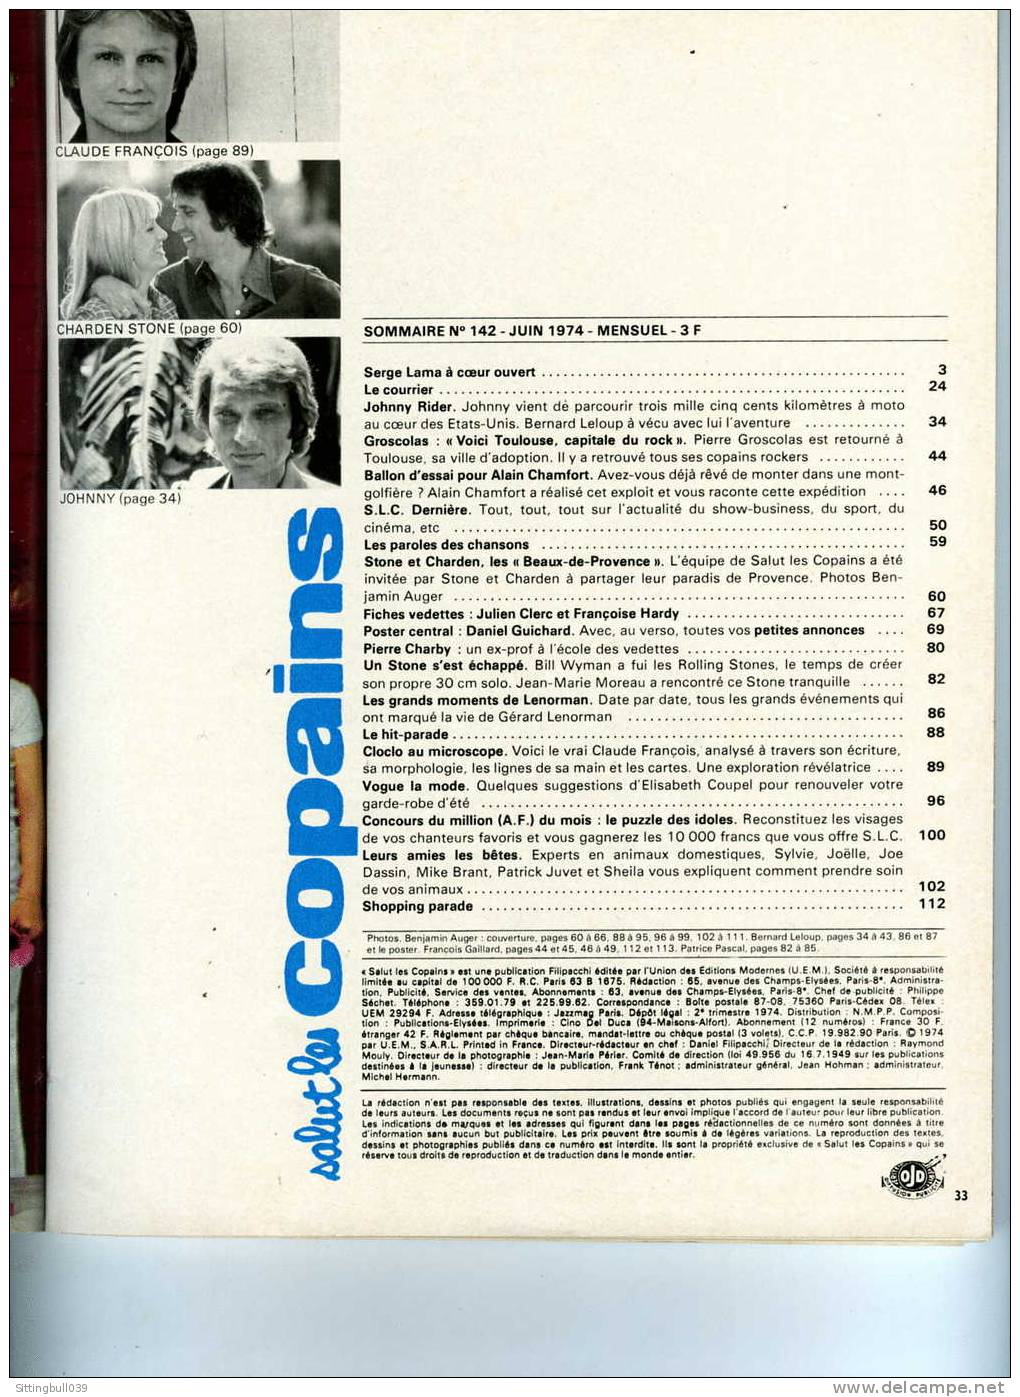 SALUT LES COPAINS N° 142 (SLC) JUIN 1974. CLOCLO, JOHNNY, ALAIN CHAMFORT STONE Et CHARDEN, Etc. SUPERBES PHOTOS. - Muziek